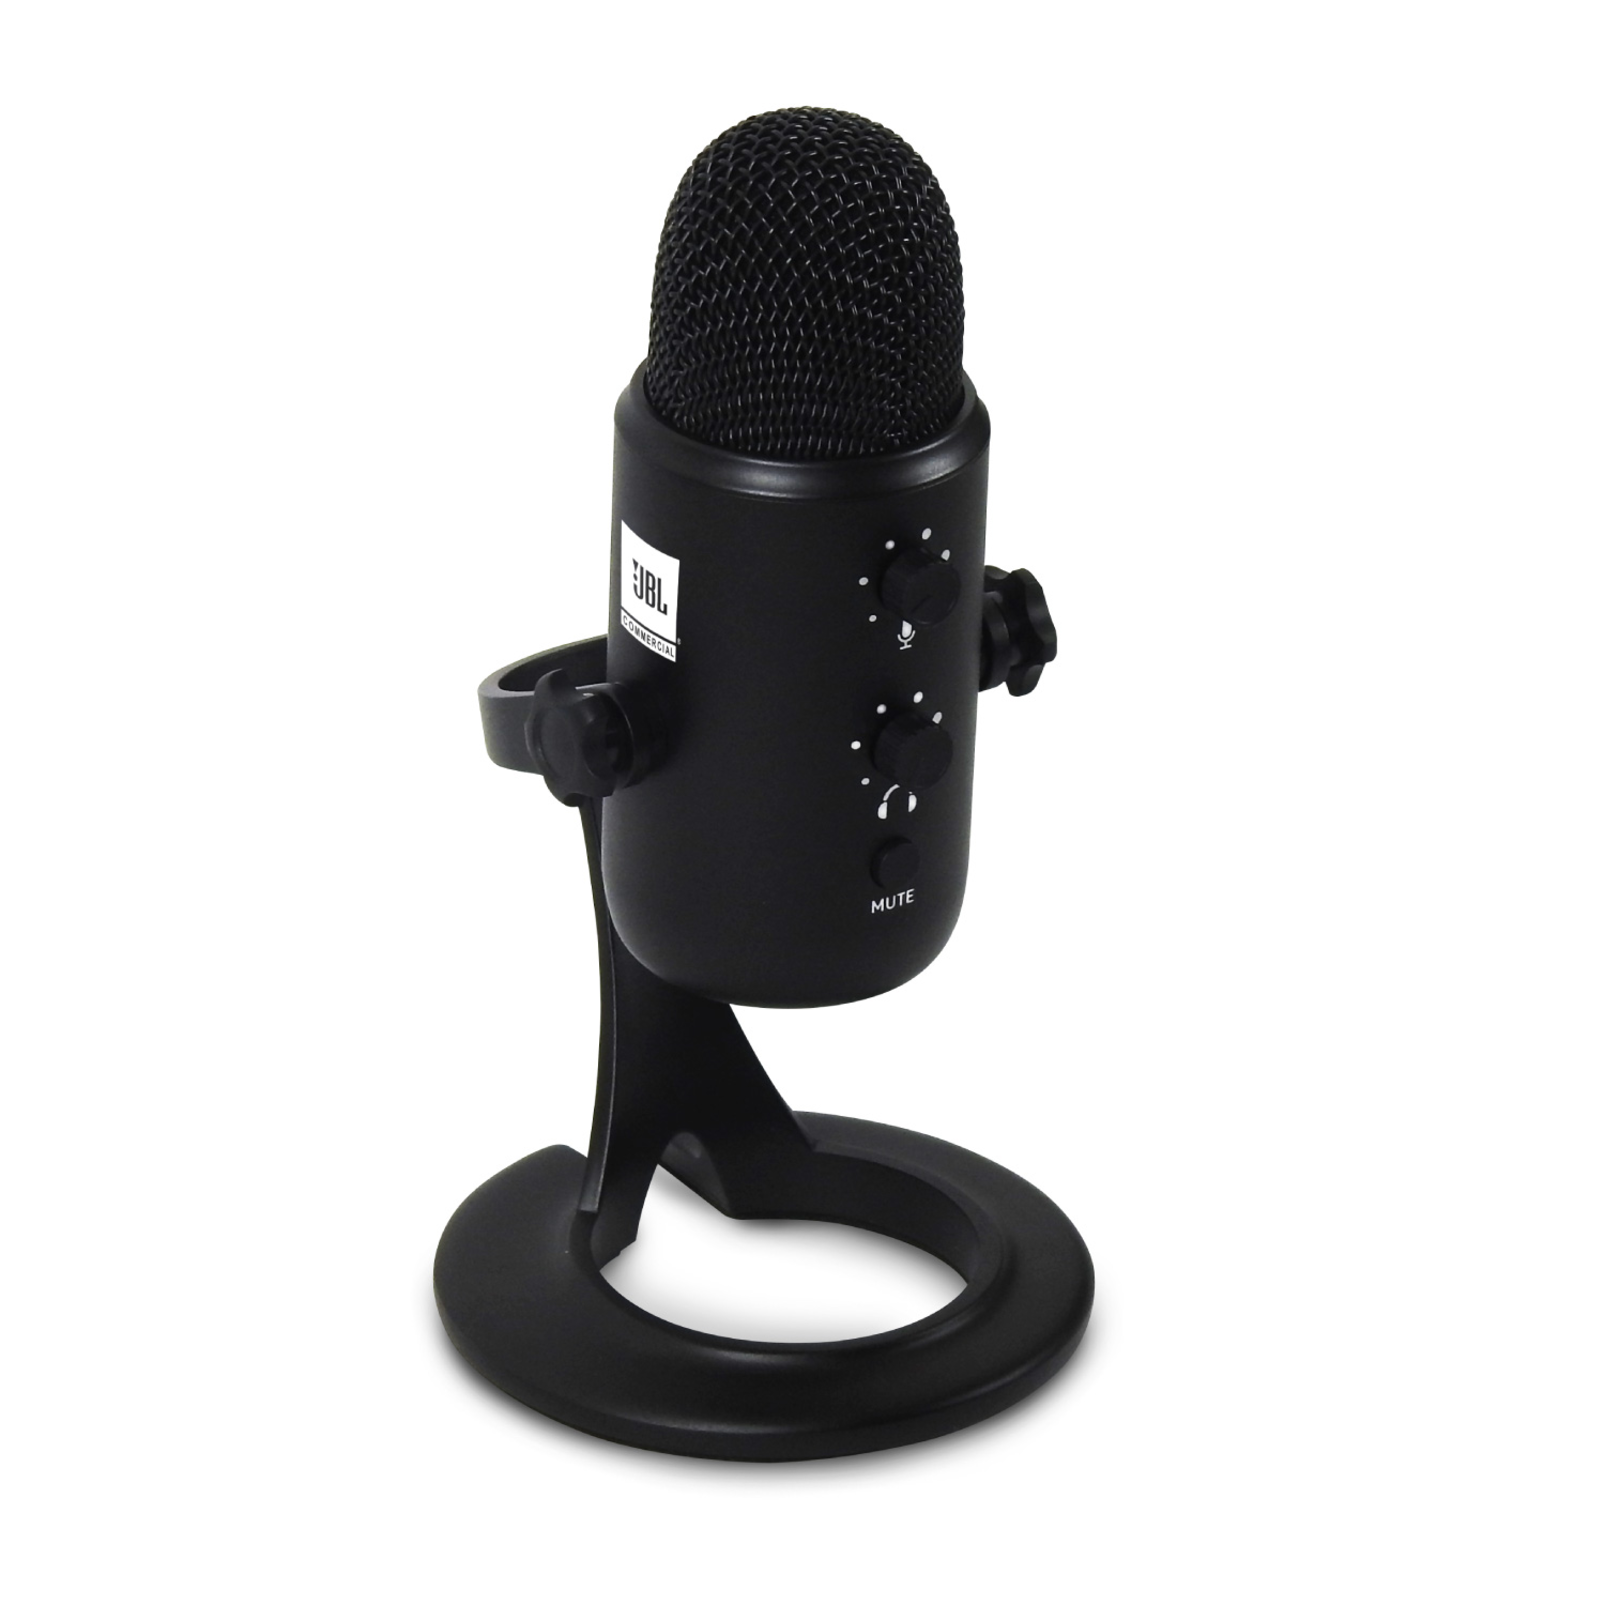 JBLCSUM10 - Black - Compact USB Microphone - Detailshot 1